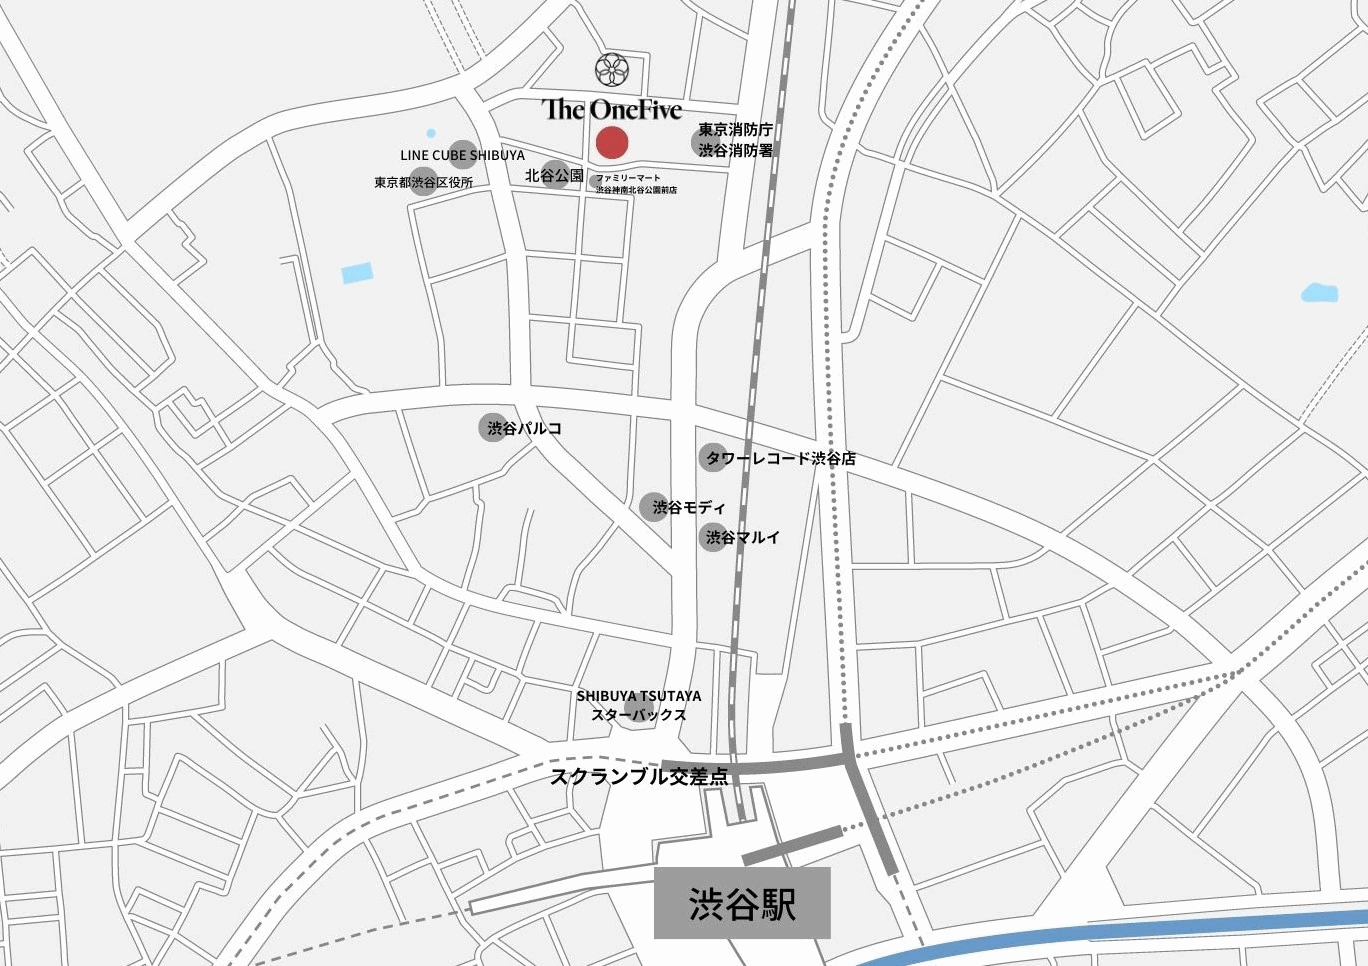 ザ・ワンファイブ東京渋谷への概略アクセスマップ